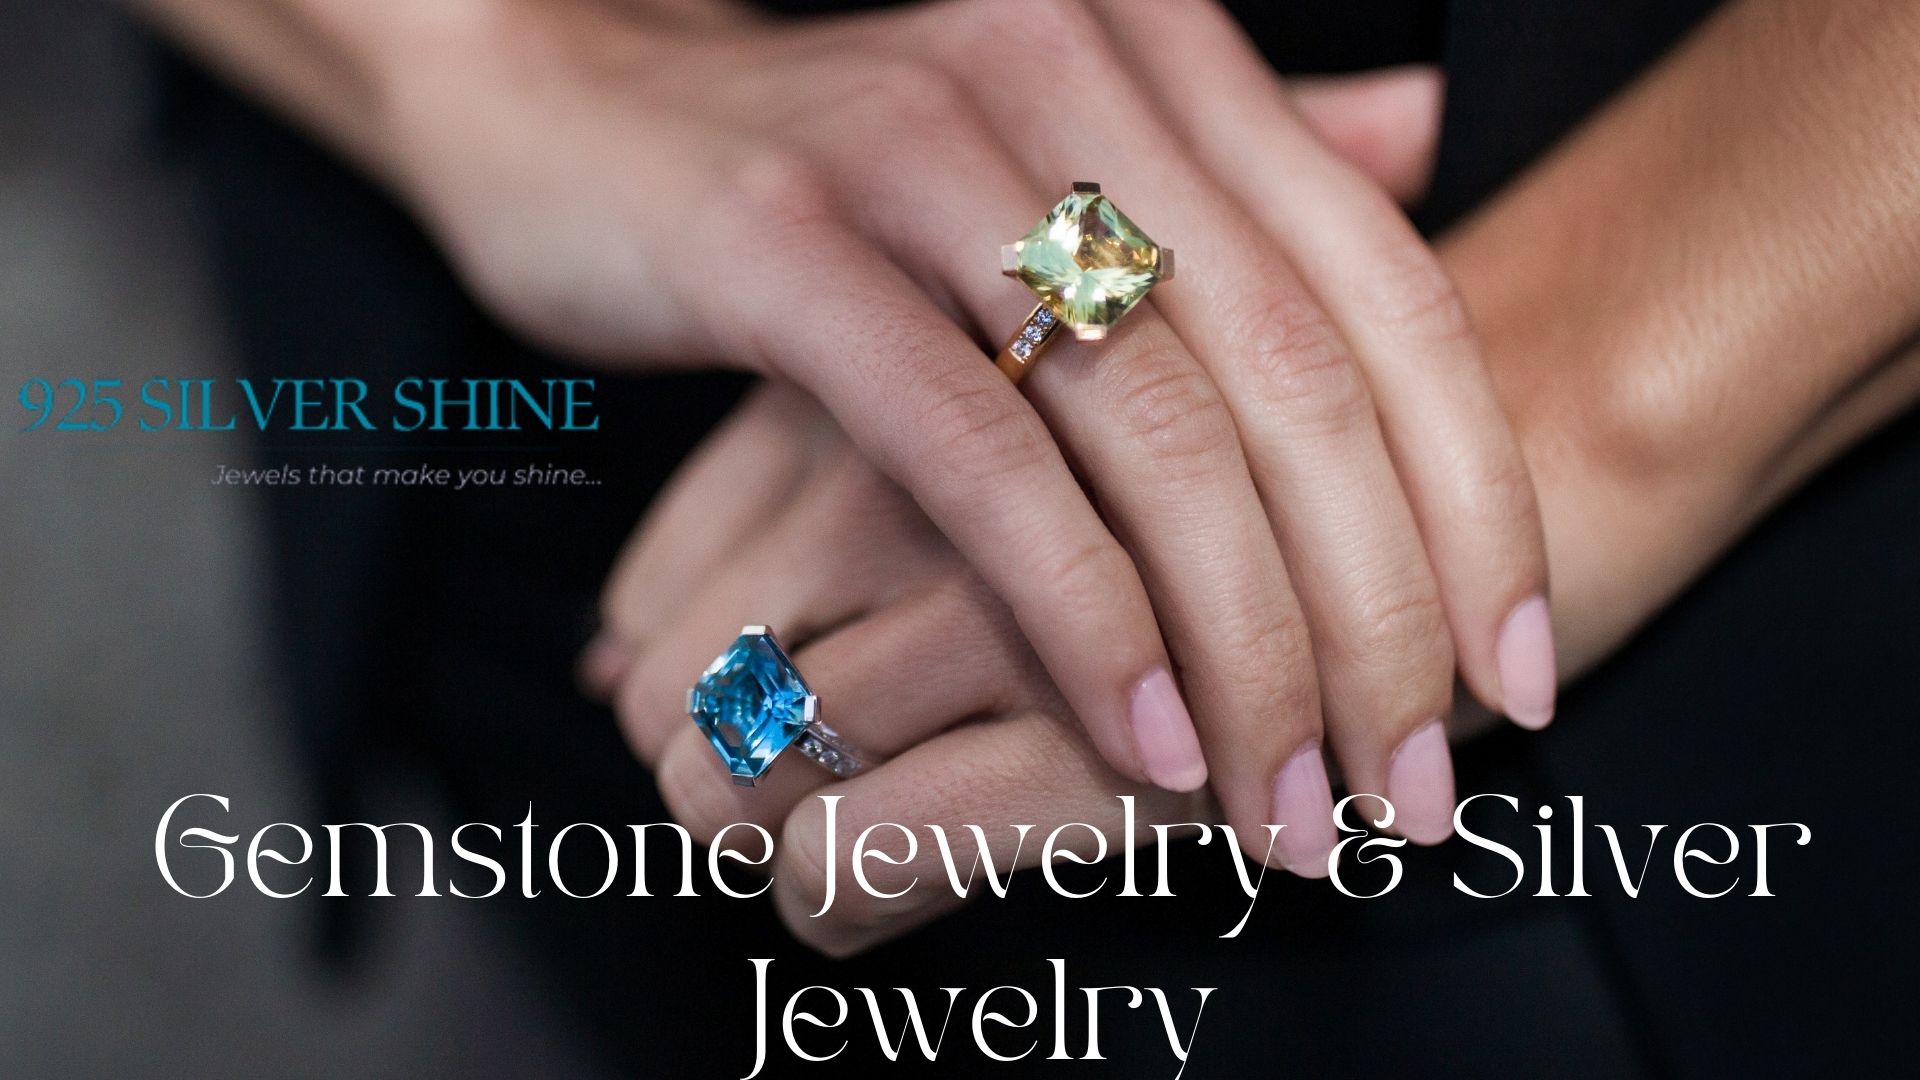 gemstone jewelry, wholesale gemstone jewelry, gemstonje jewelry supplier, gemstone jewelry wholesaler, silver jewelry, sterlijg silver jewelry, silver jewelry wholesaler